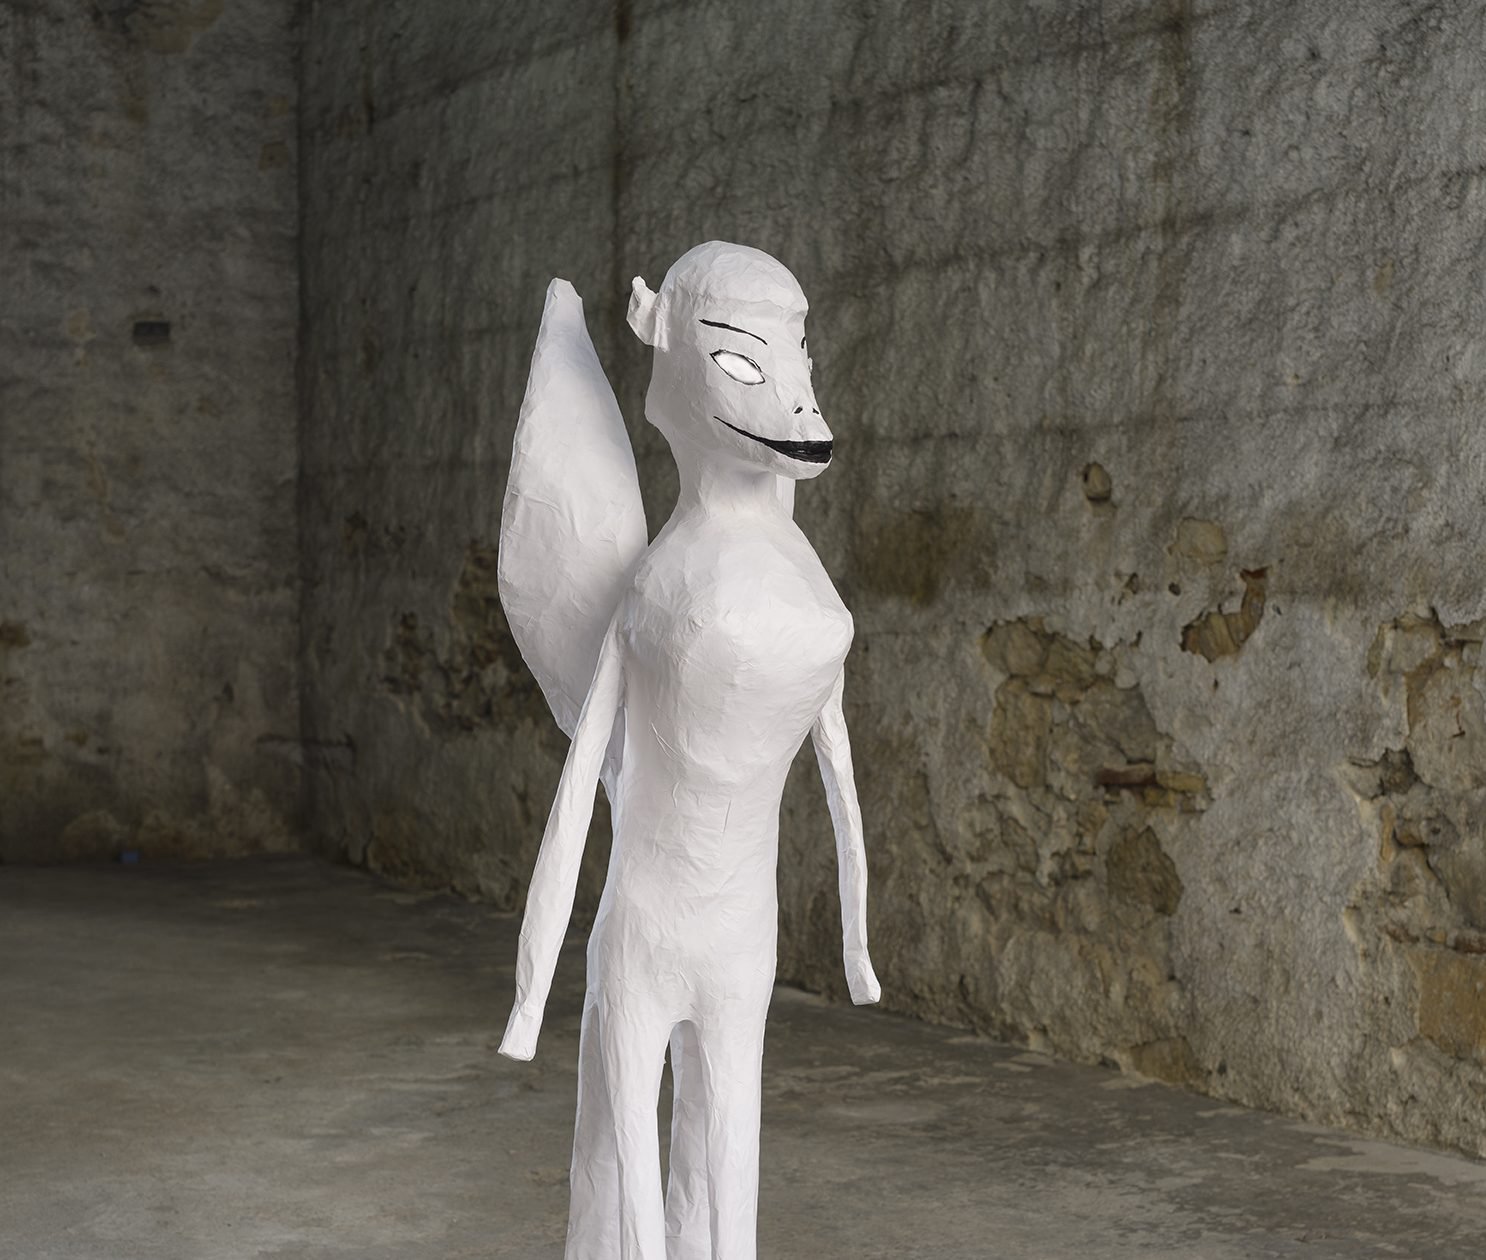 Sidsel Meineche Hansen, Insider, sculpture made from chicken wire, foam and xerox Papier-mâché, 150 x 40 x 30 cm (59 x 15 3/4 x 11 3/4 in), 2014